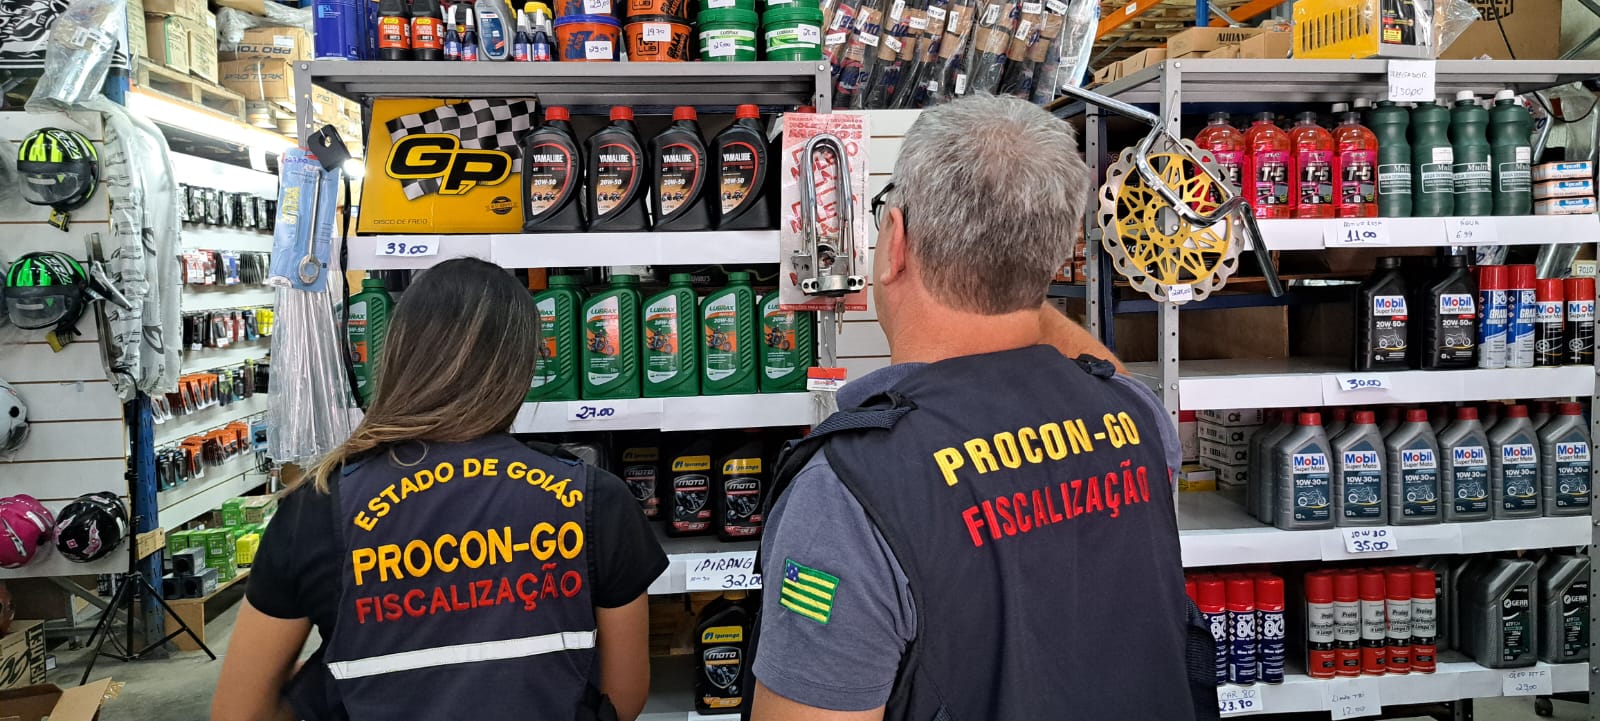 Óleo lubrificante irregular: fiscalização do Procon Goiás apreende quase 4 mil litros do produto